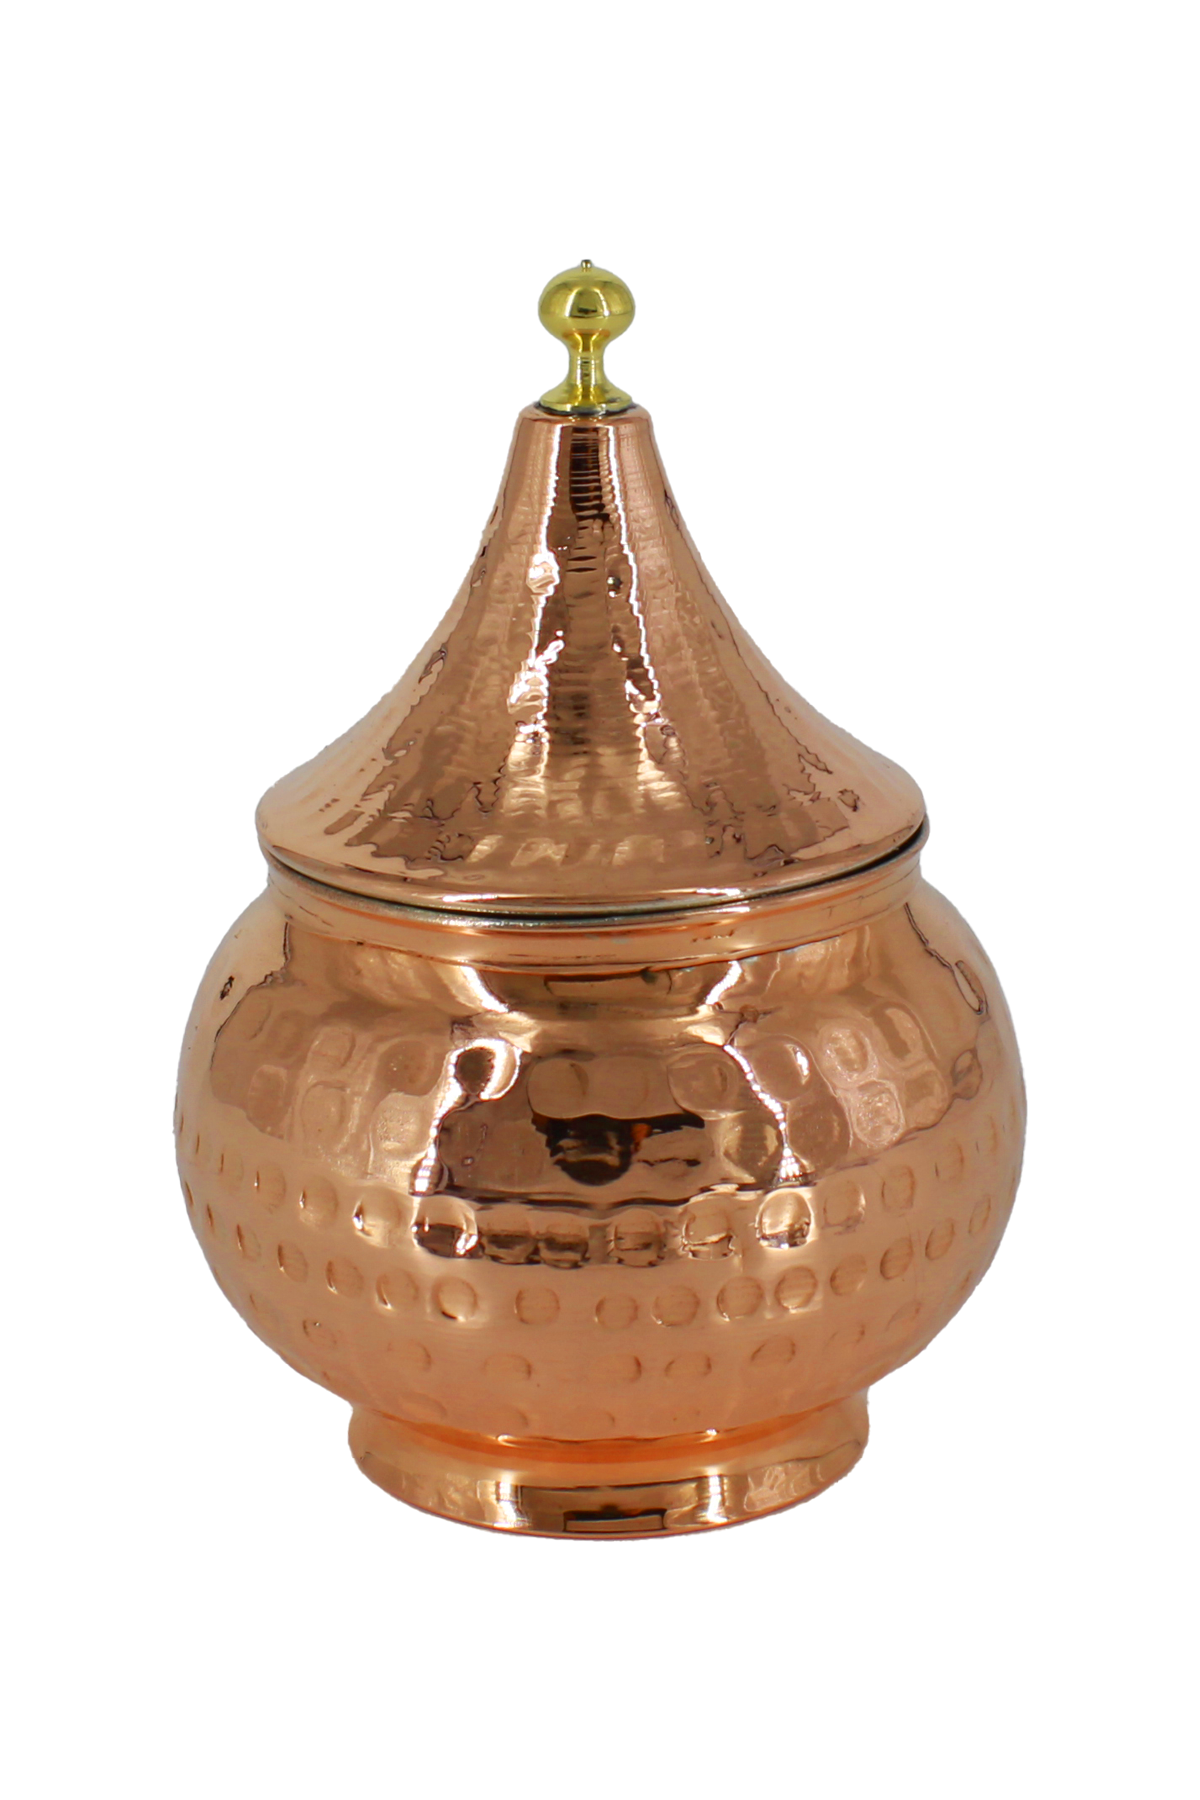 Copper Dome Spice Bowl